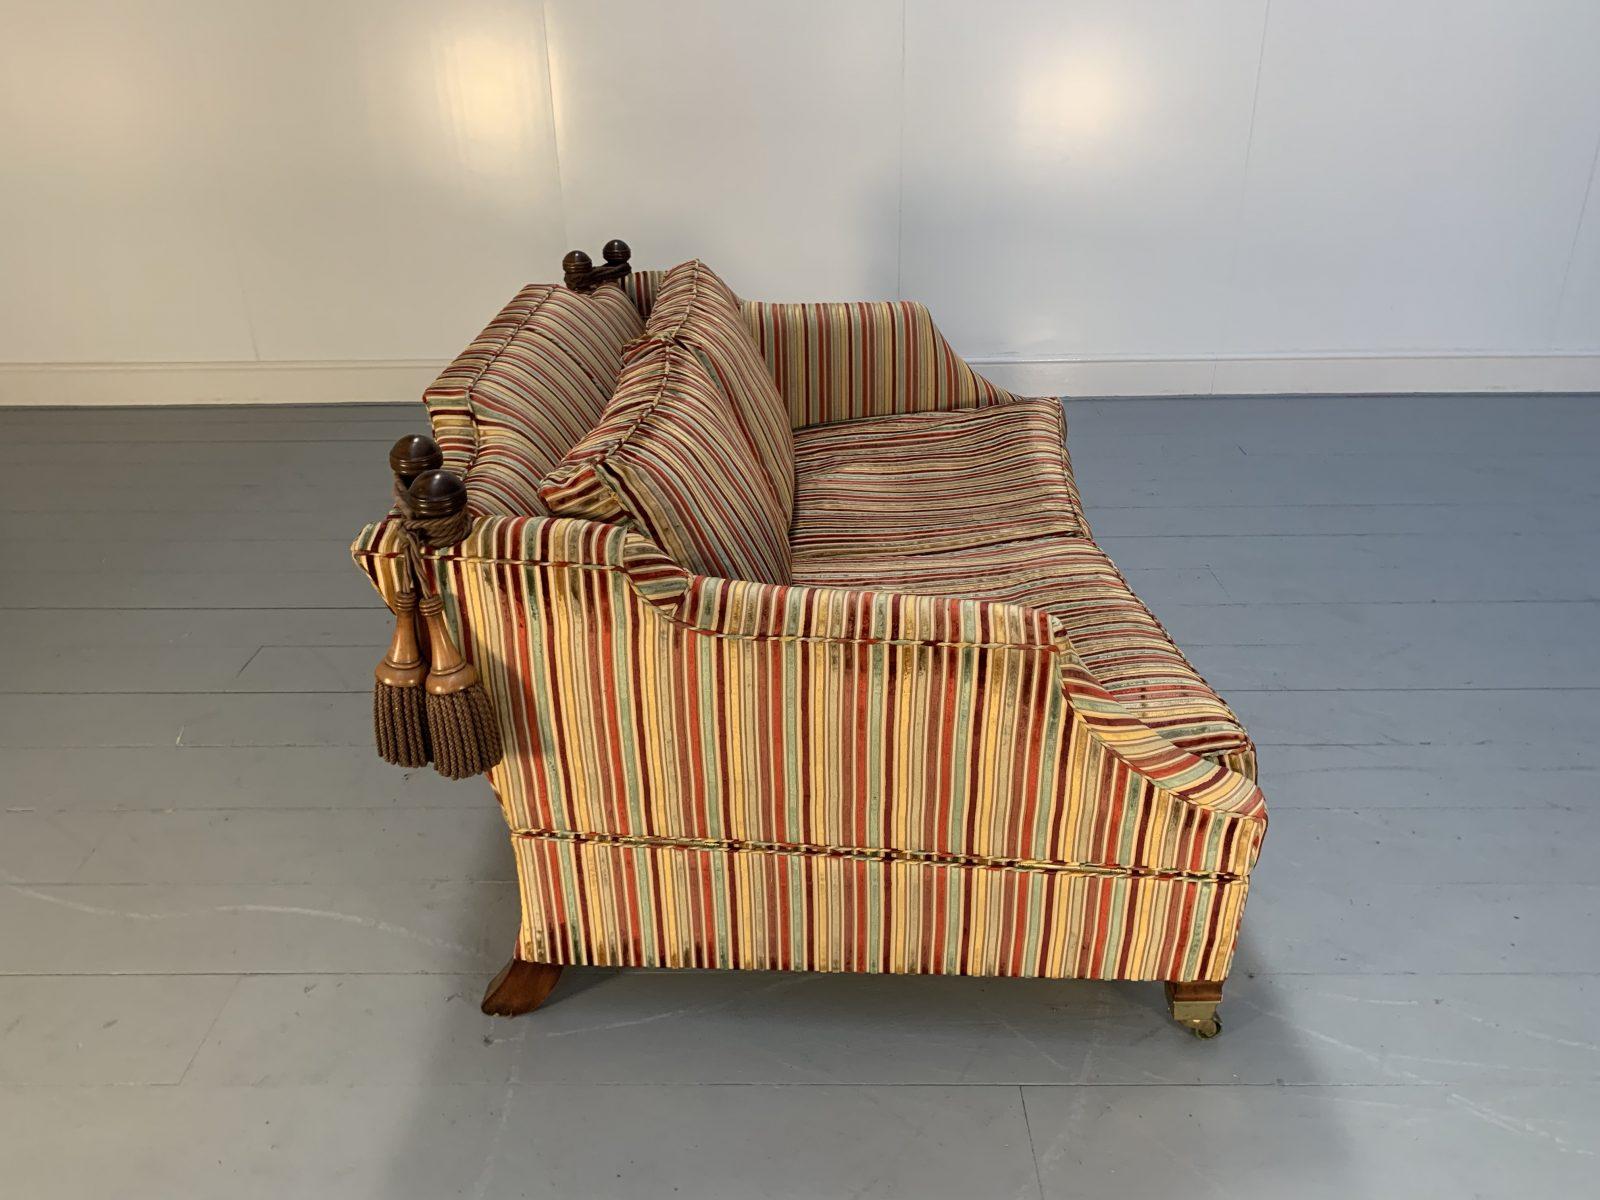 Duresta “Hornblower” Large 2.5-Seat Sofa in Striped Velvet Fabric For Sale 2